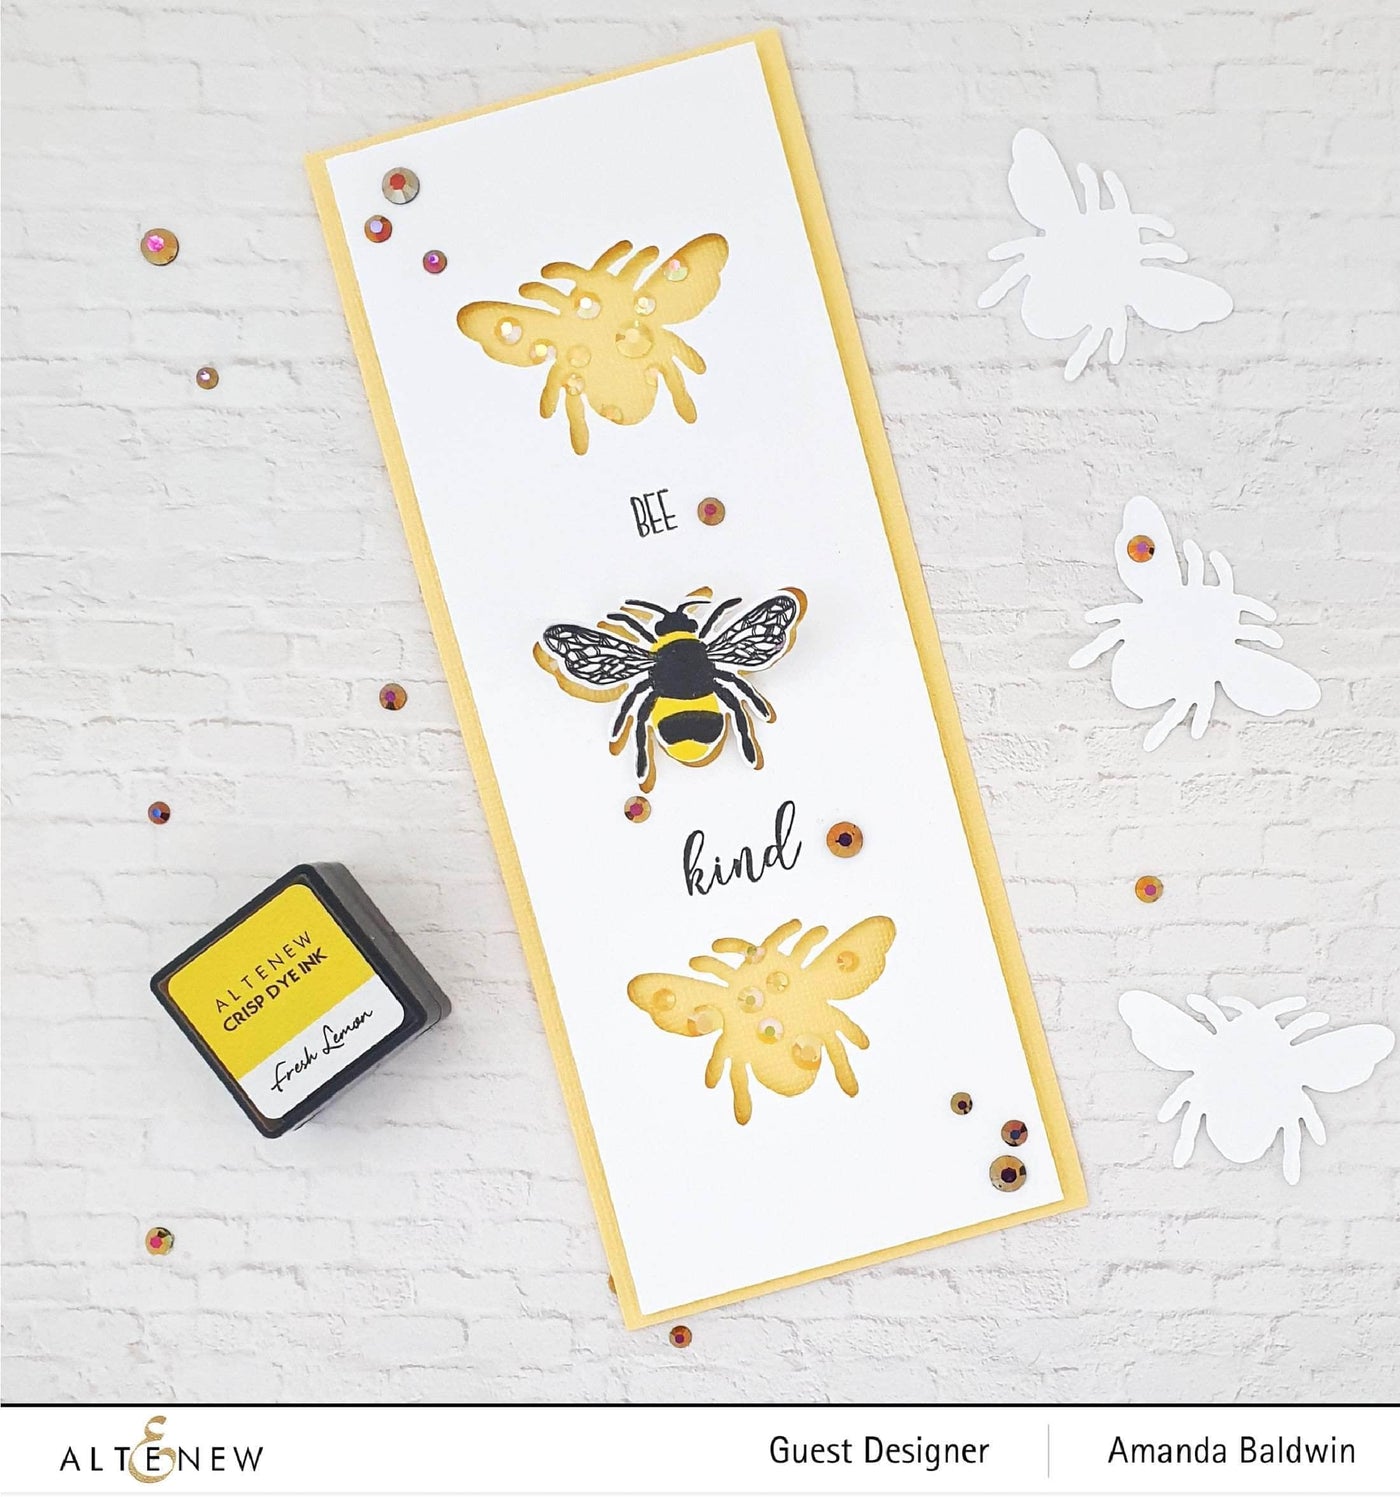 Altenew Mini Delight Mini Delight: Bee Kind Stamp & Die Set